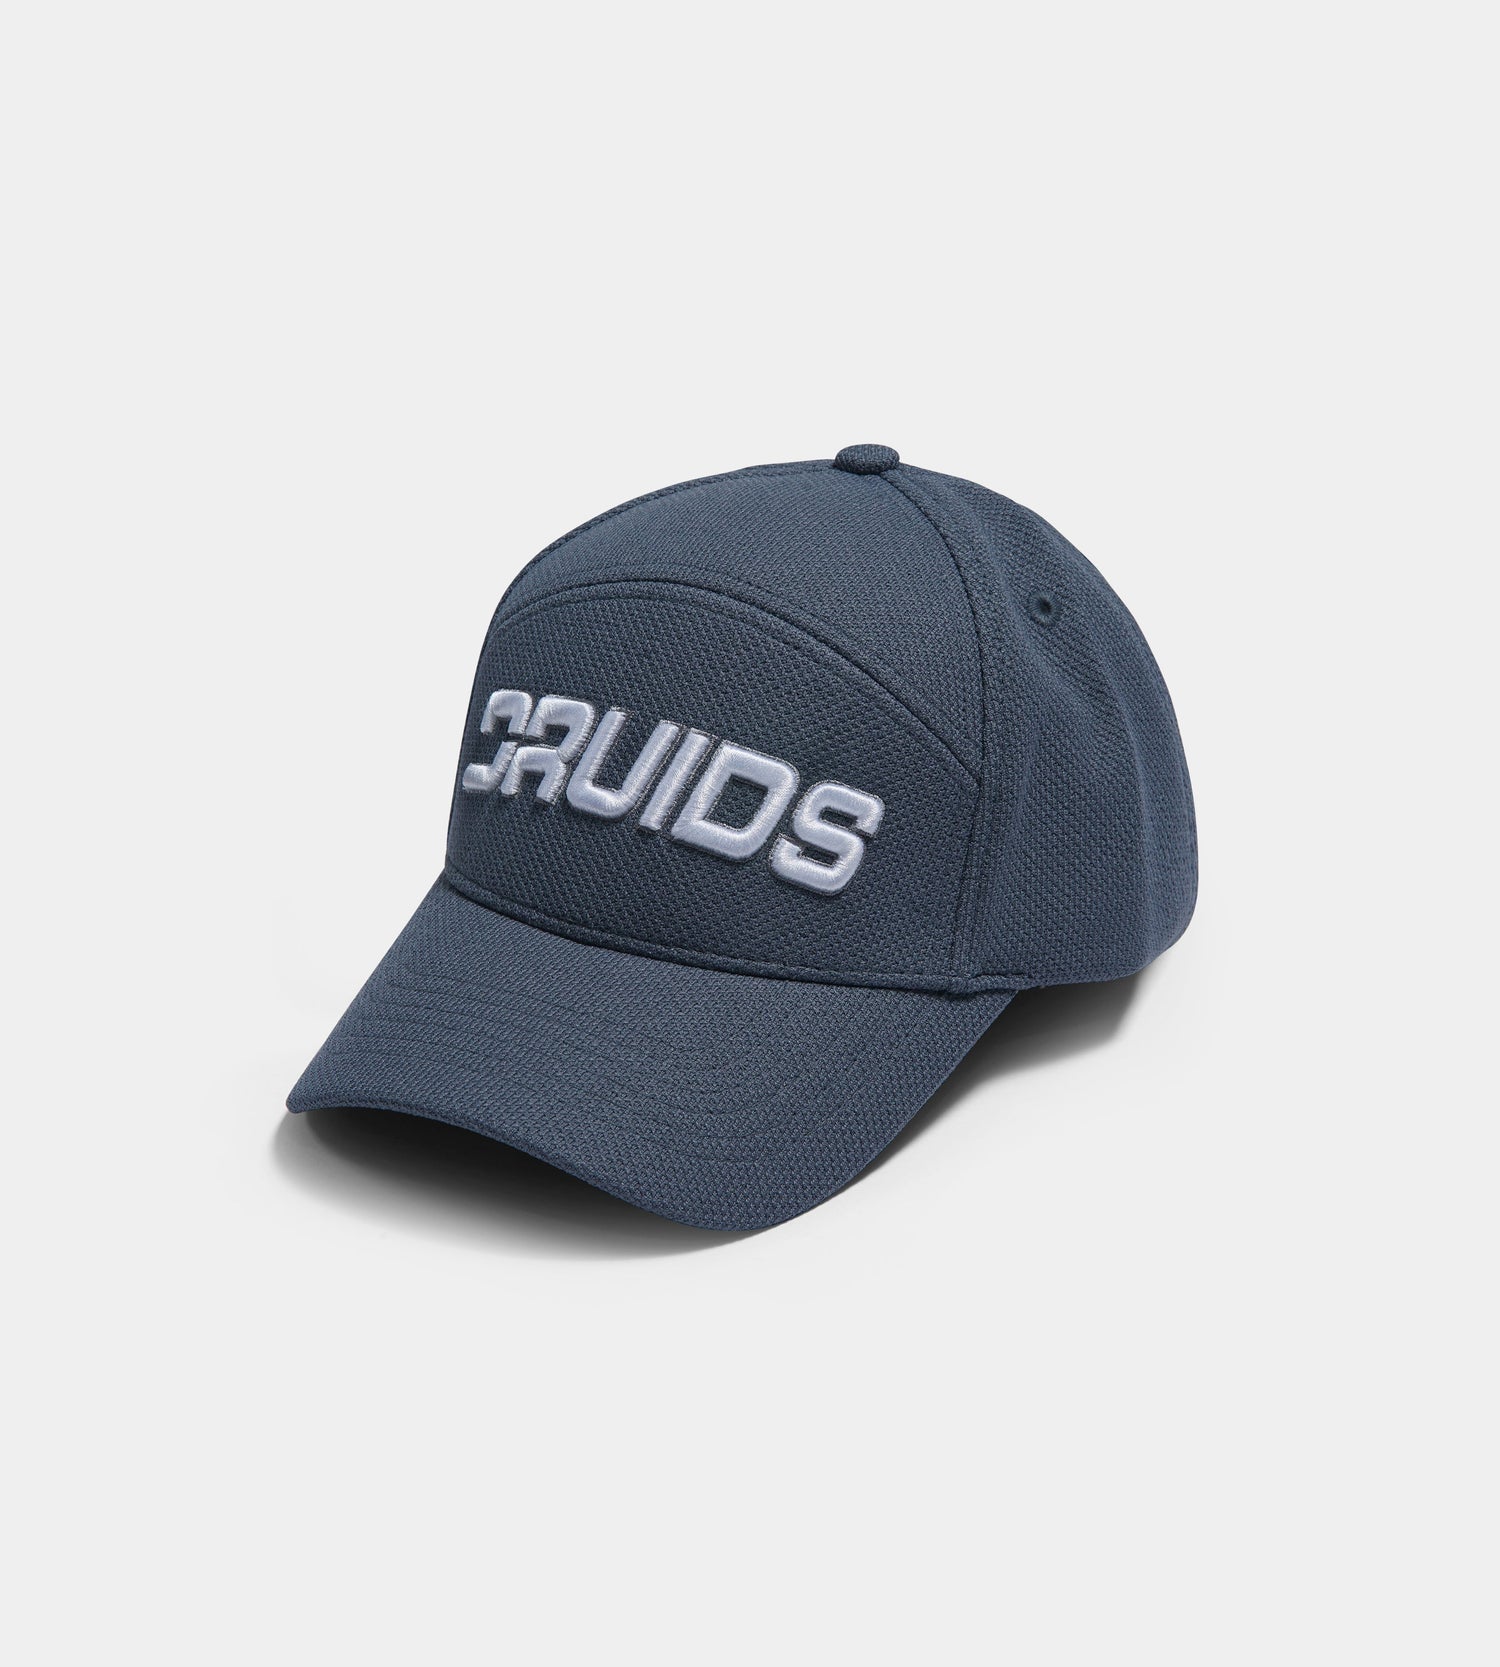 PERFORATED CAP - GREY - DRUIDS